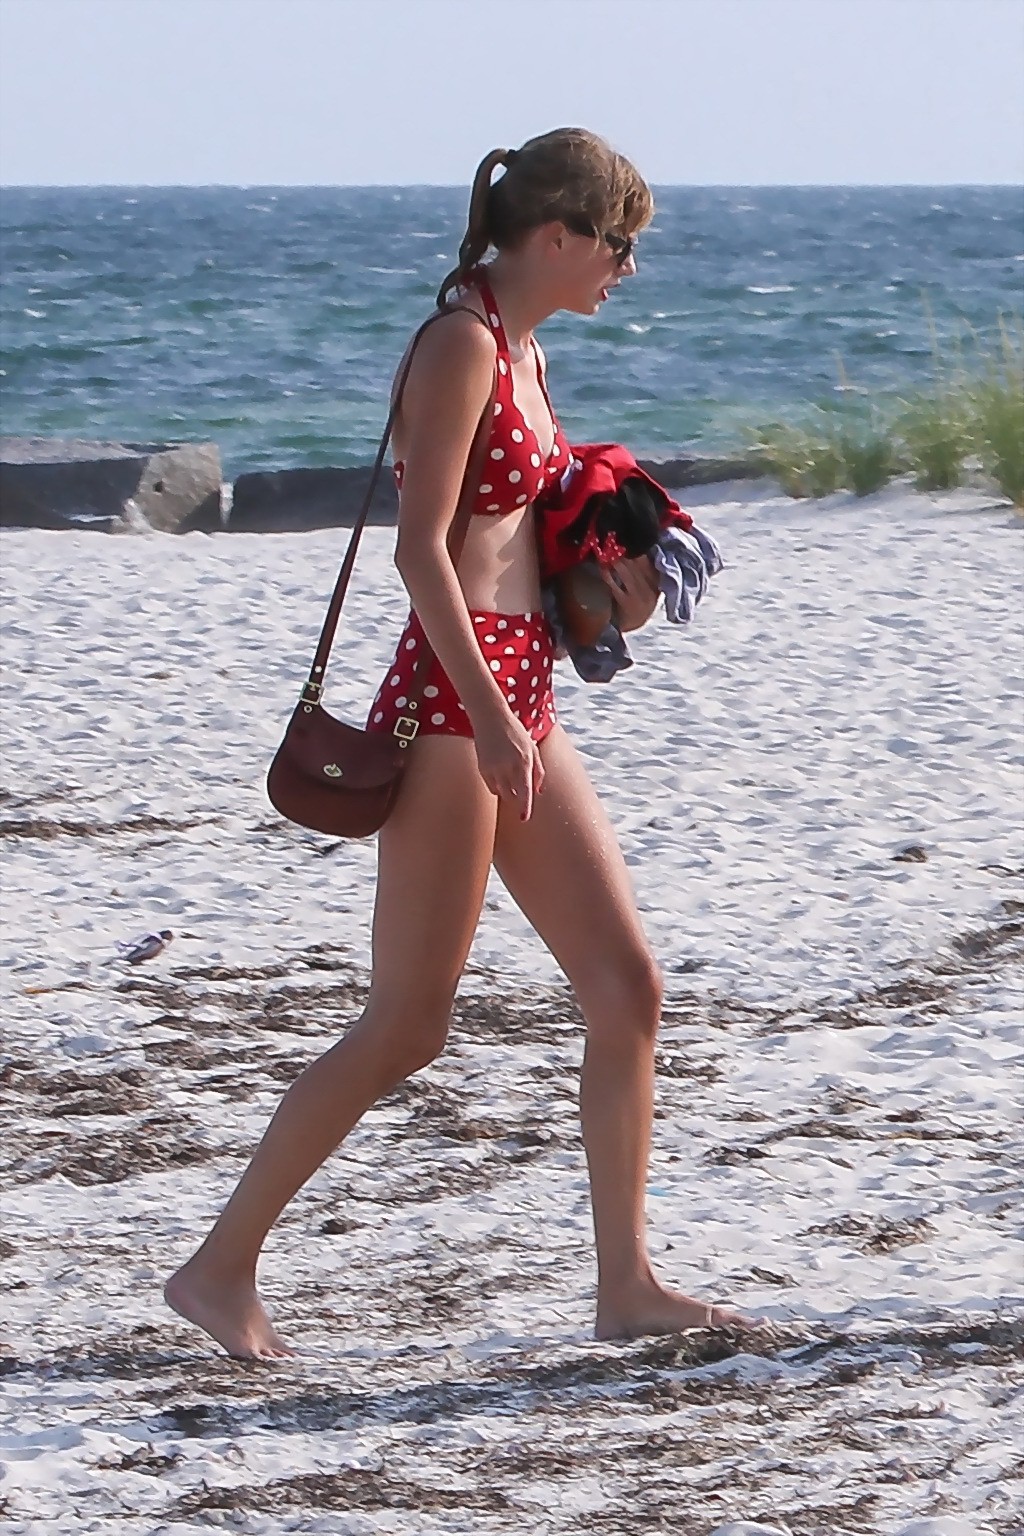 Taylor Swift shows her hot body wearing polka dot bikini at a beach in Cape Cod #75254277